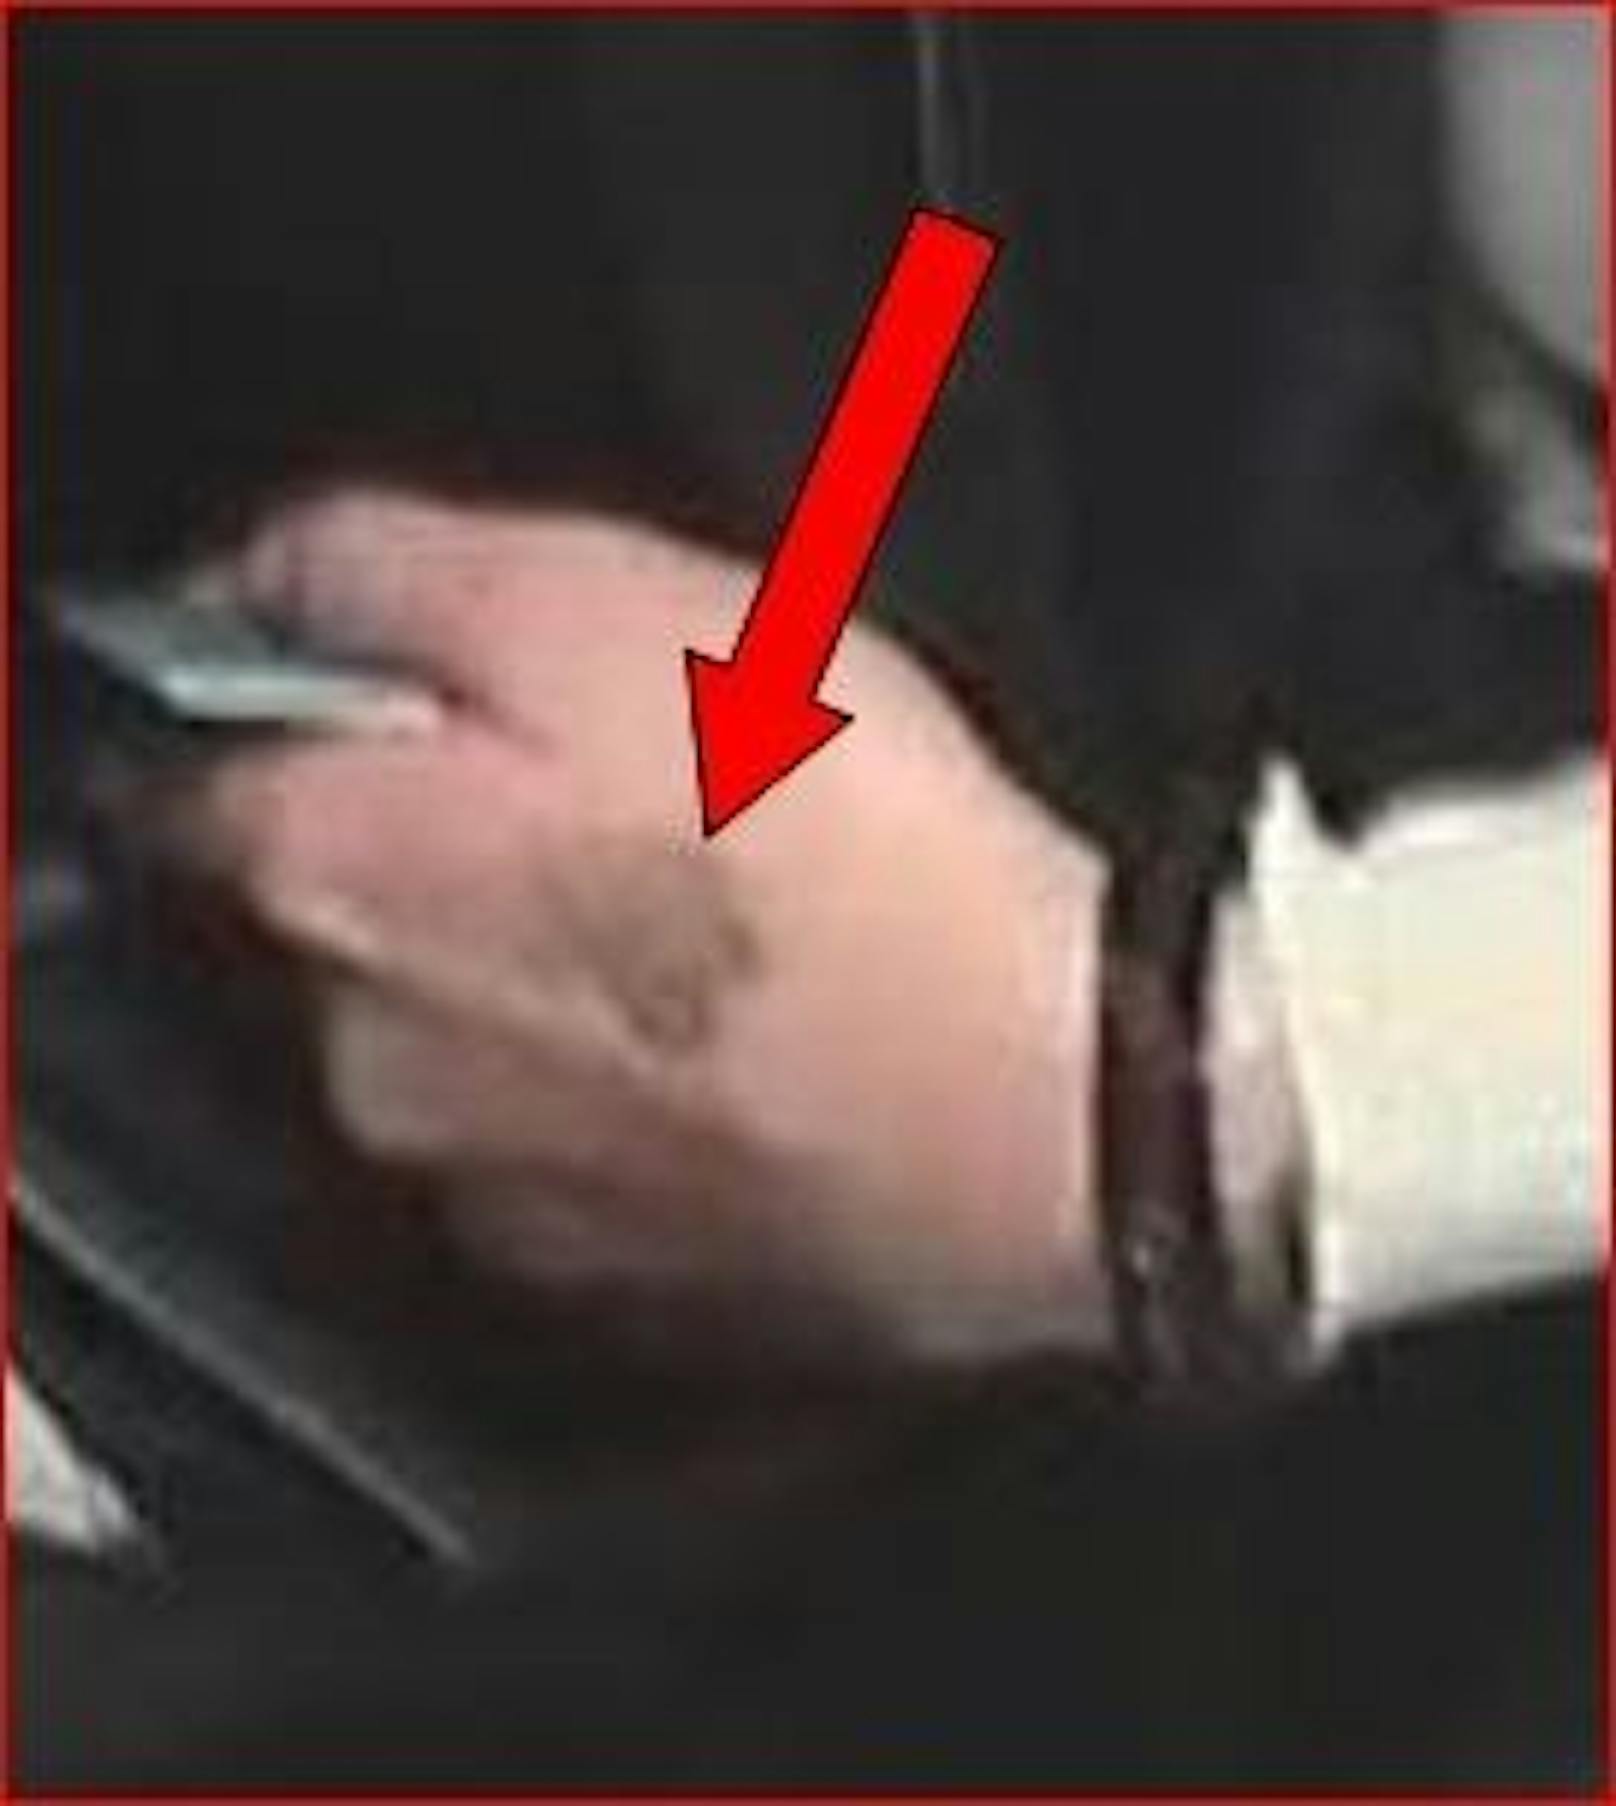 Eine der beiden Tatverdächtigen hat eine Auffälligkeit an der linken äußeren Handseite (Tätowierung oder Hautveränderung).